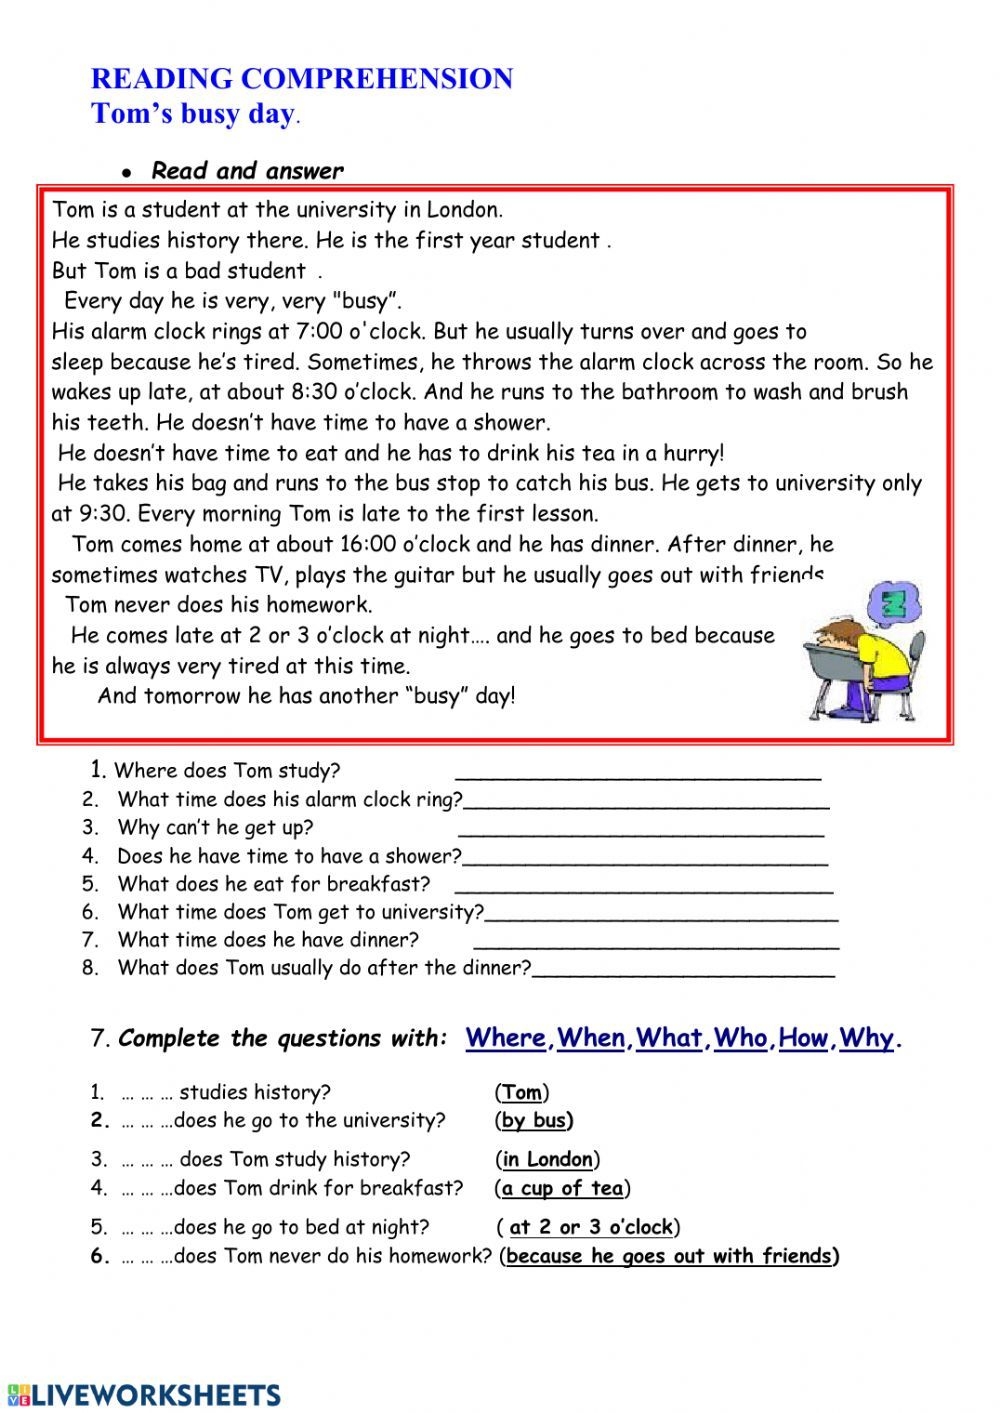 Reading Comprehension Online Worksheet For Grade 5 You Can Do The Reading Comprehension Worksheets Writing Comprehension Free Reading Comprehension Worksheets